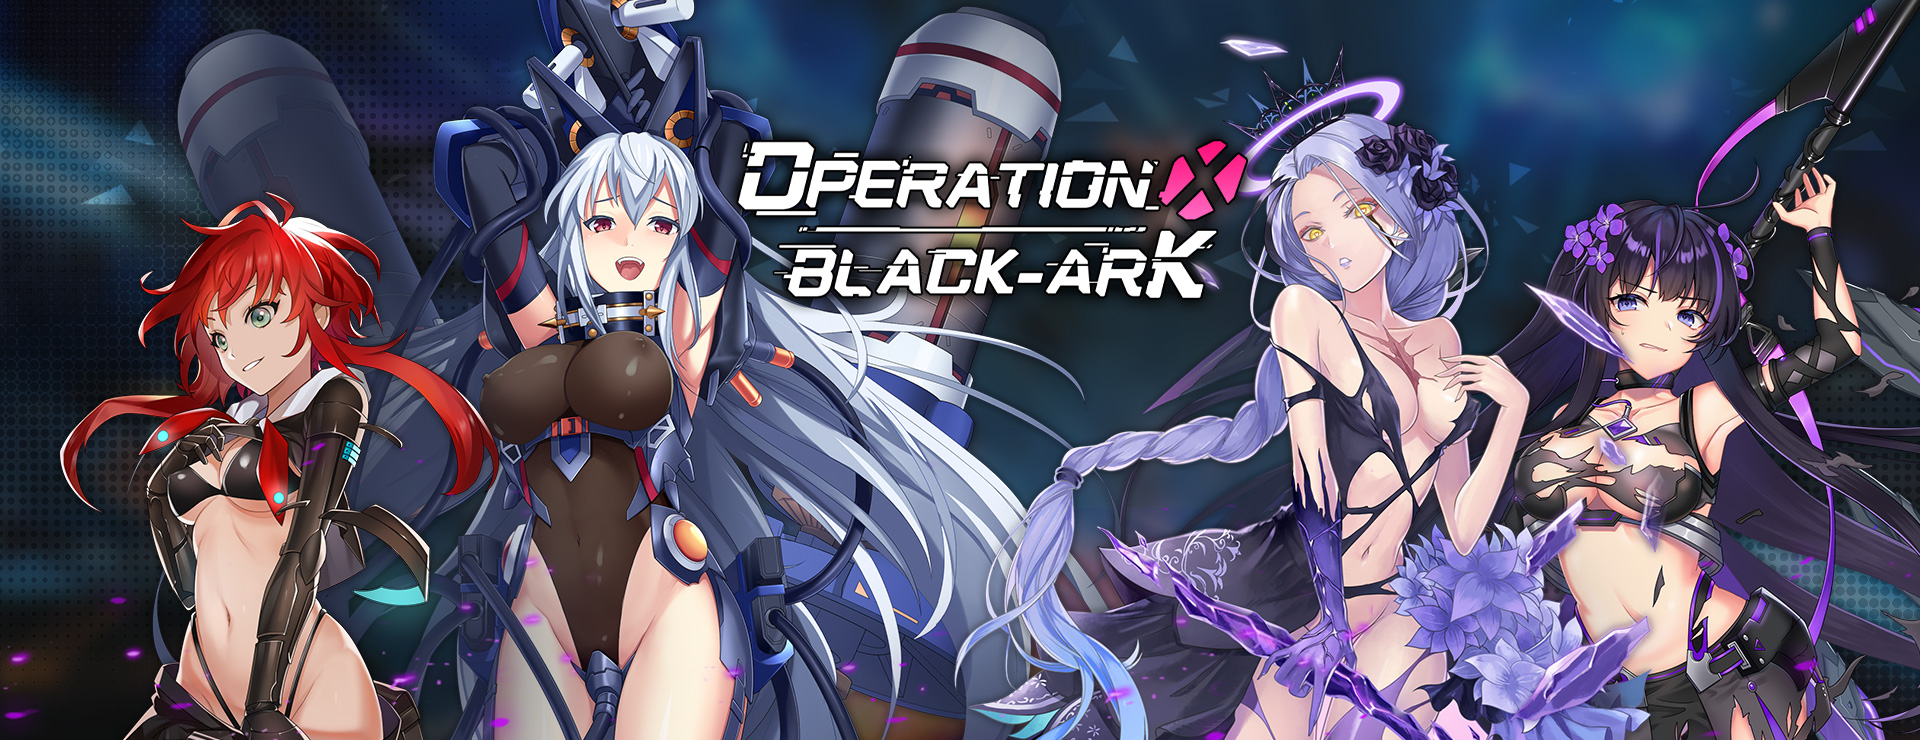 Operation Black-Ark X - SLG Game